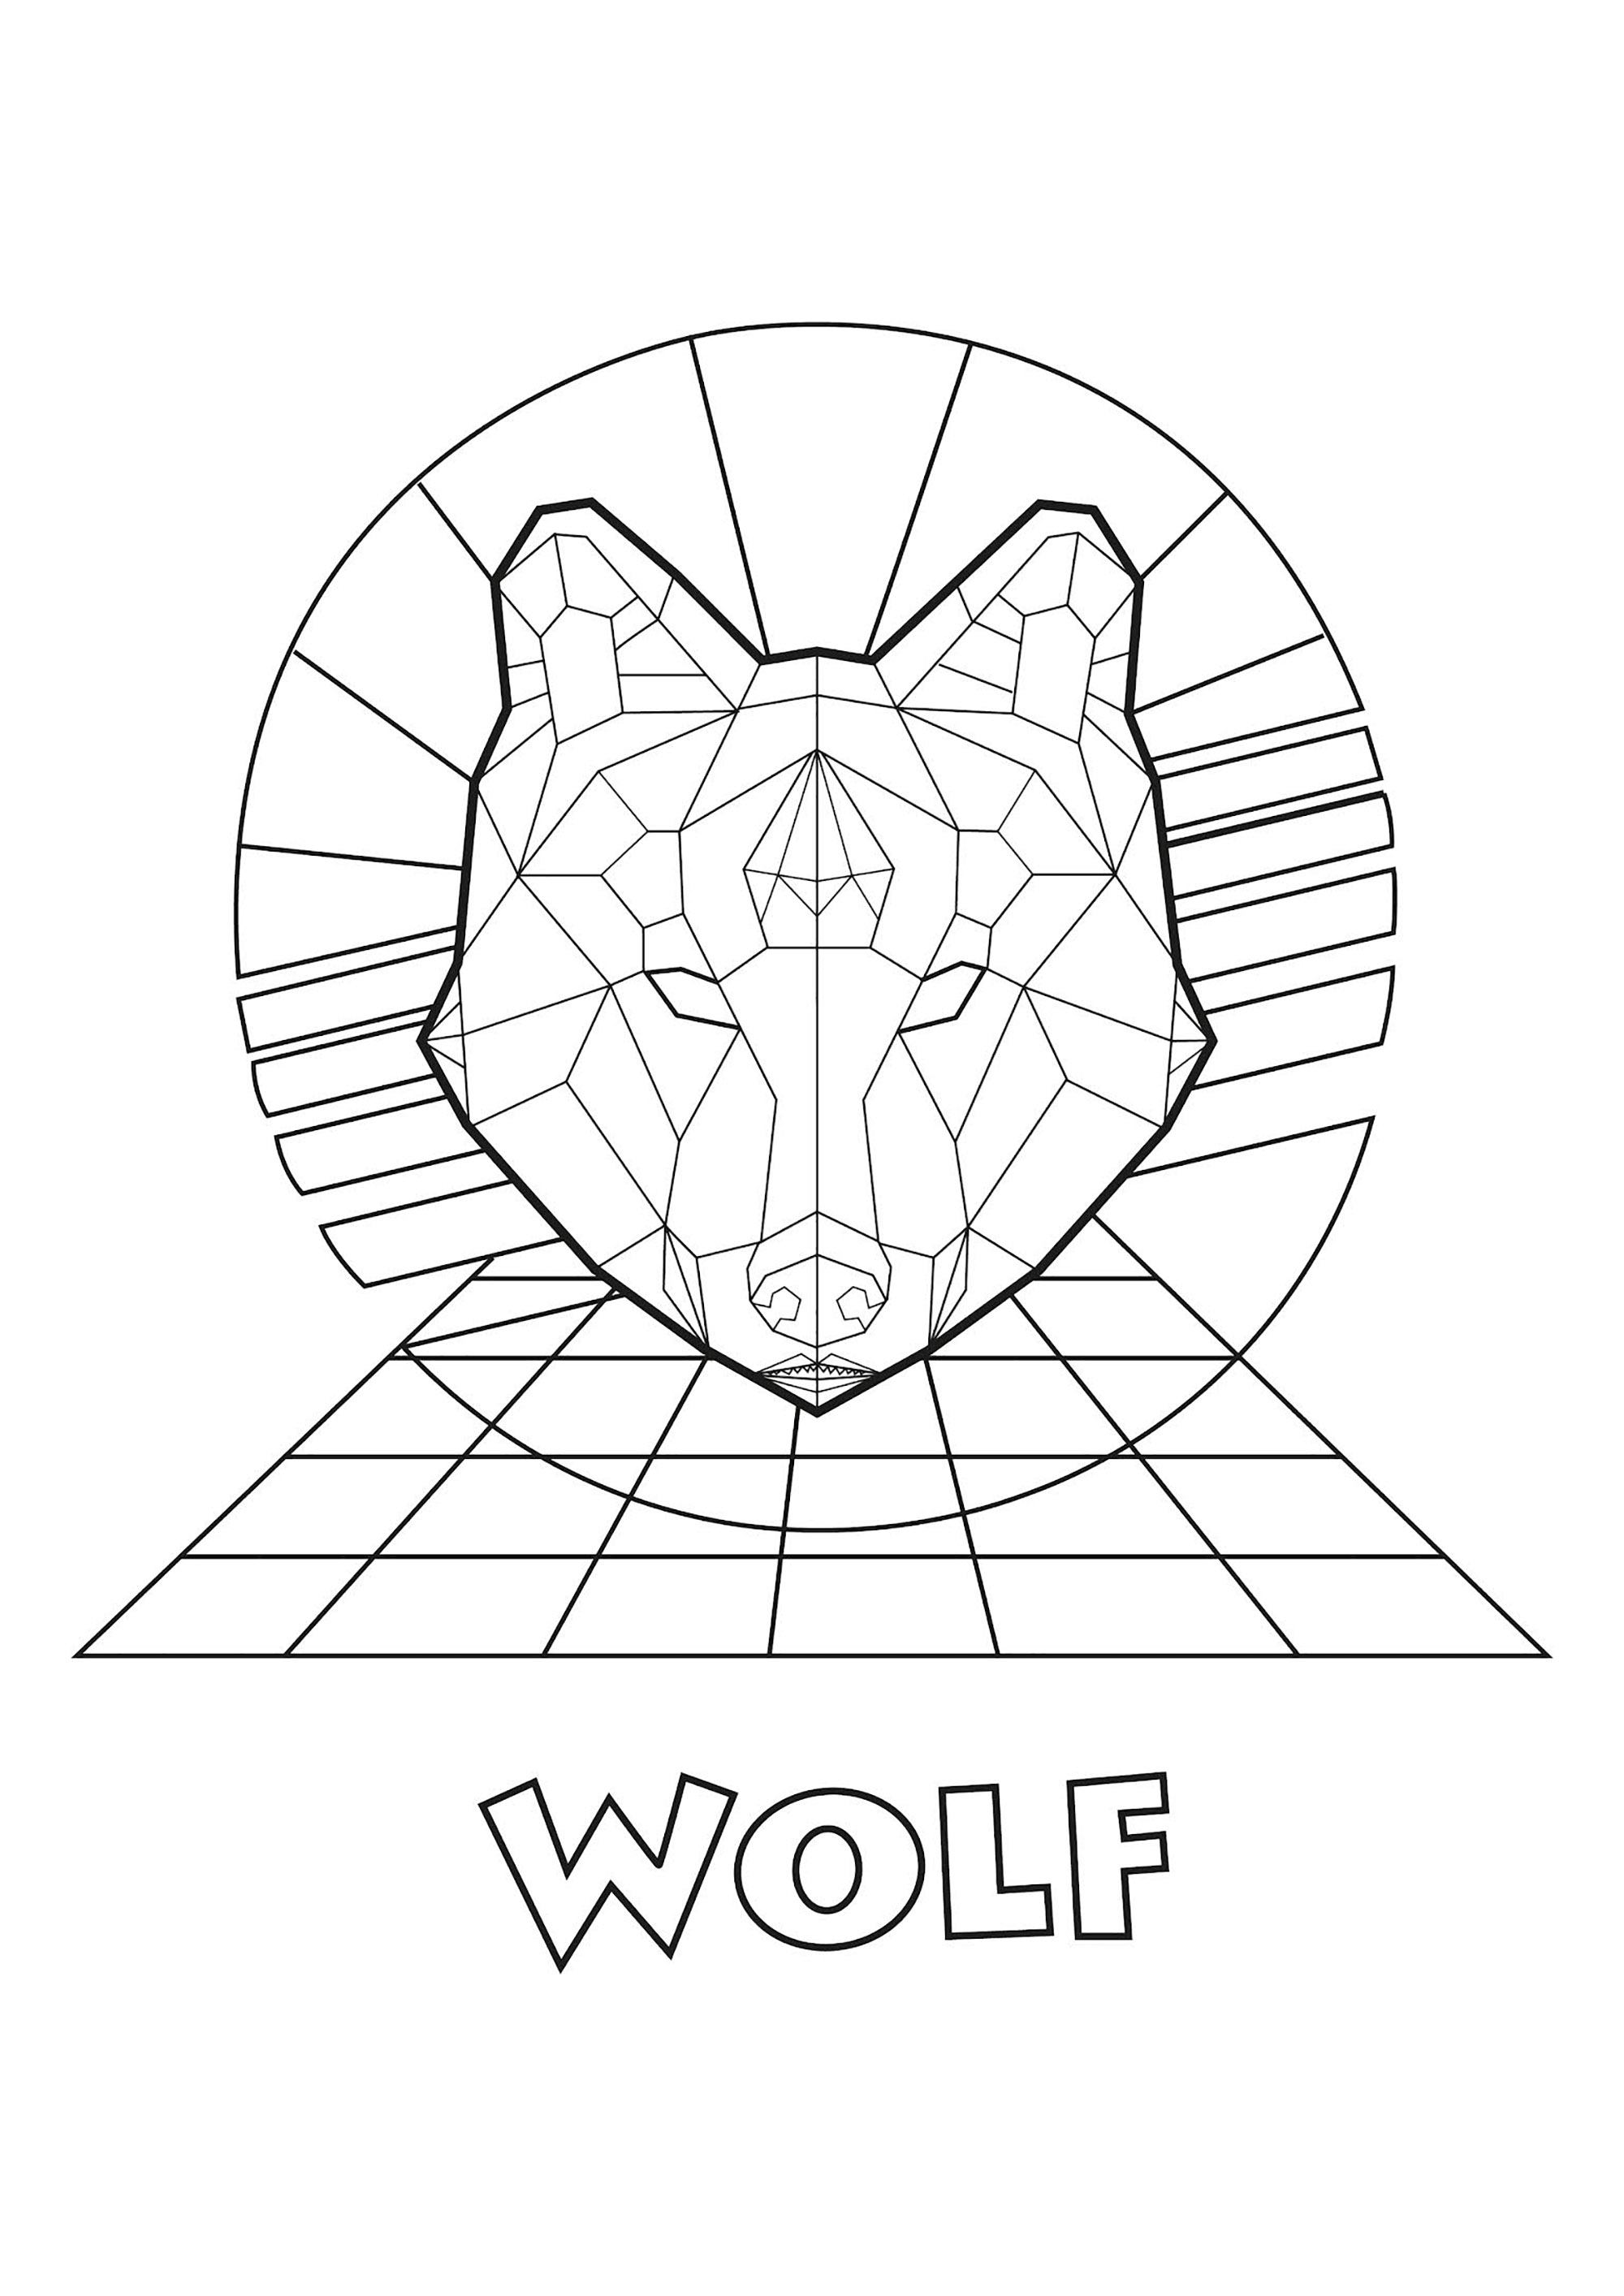 Cabeça de lobo criada com linhas rectas, com fundo geométrico